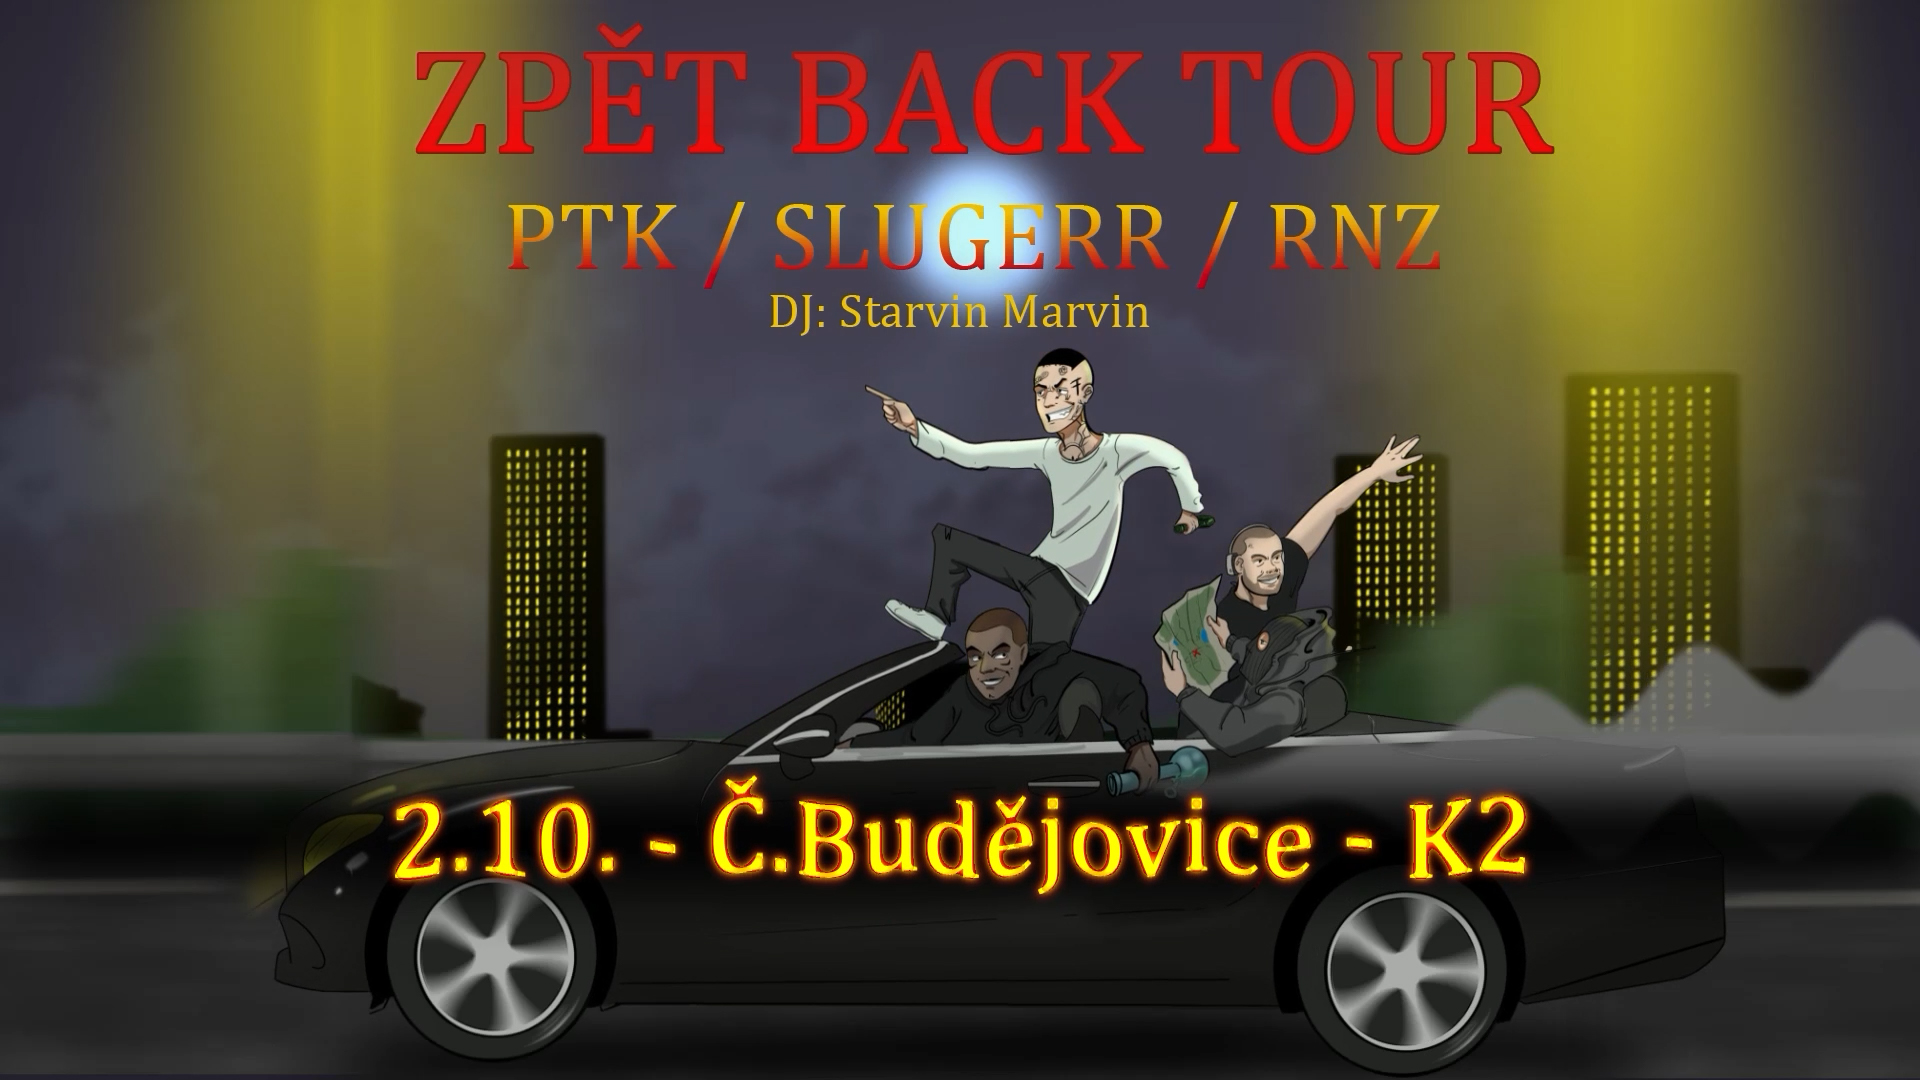 PTK - Zpět Back Tour - Č. Budějovice / K2